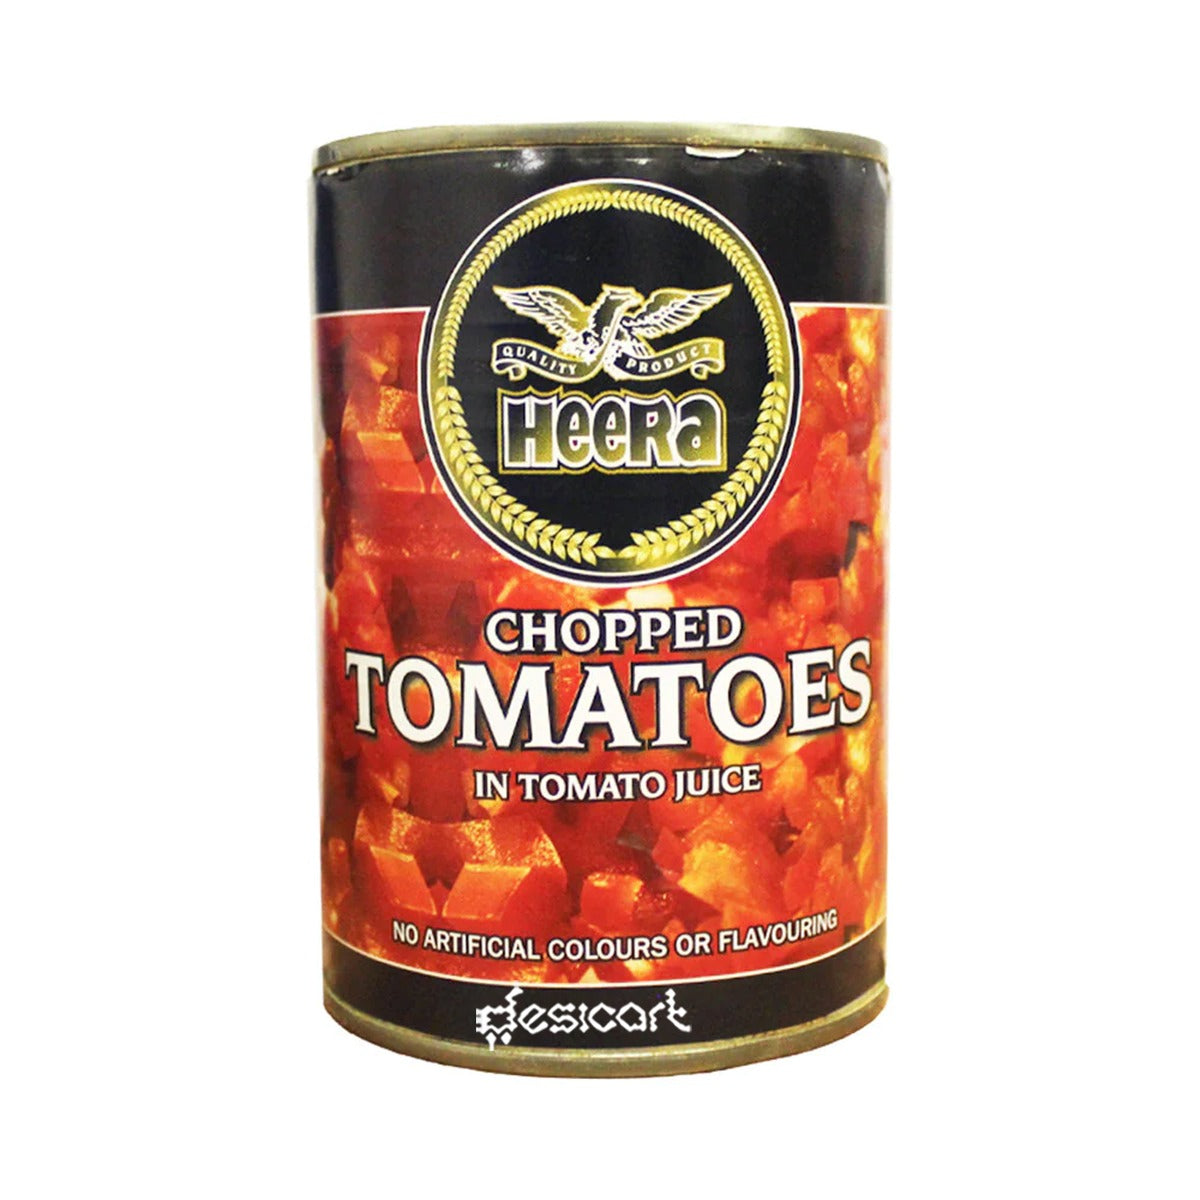 Heera Chopped Tomatoes 400g